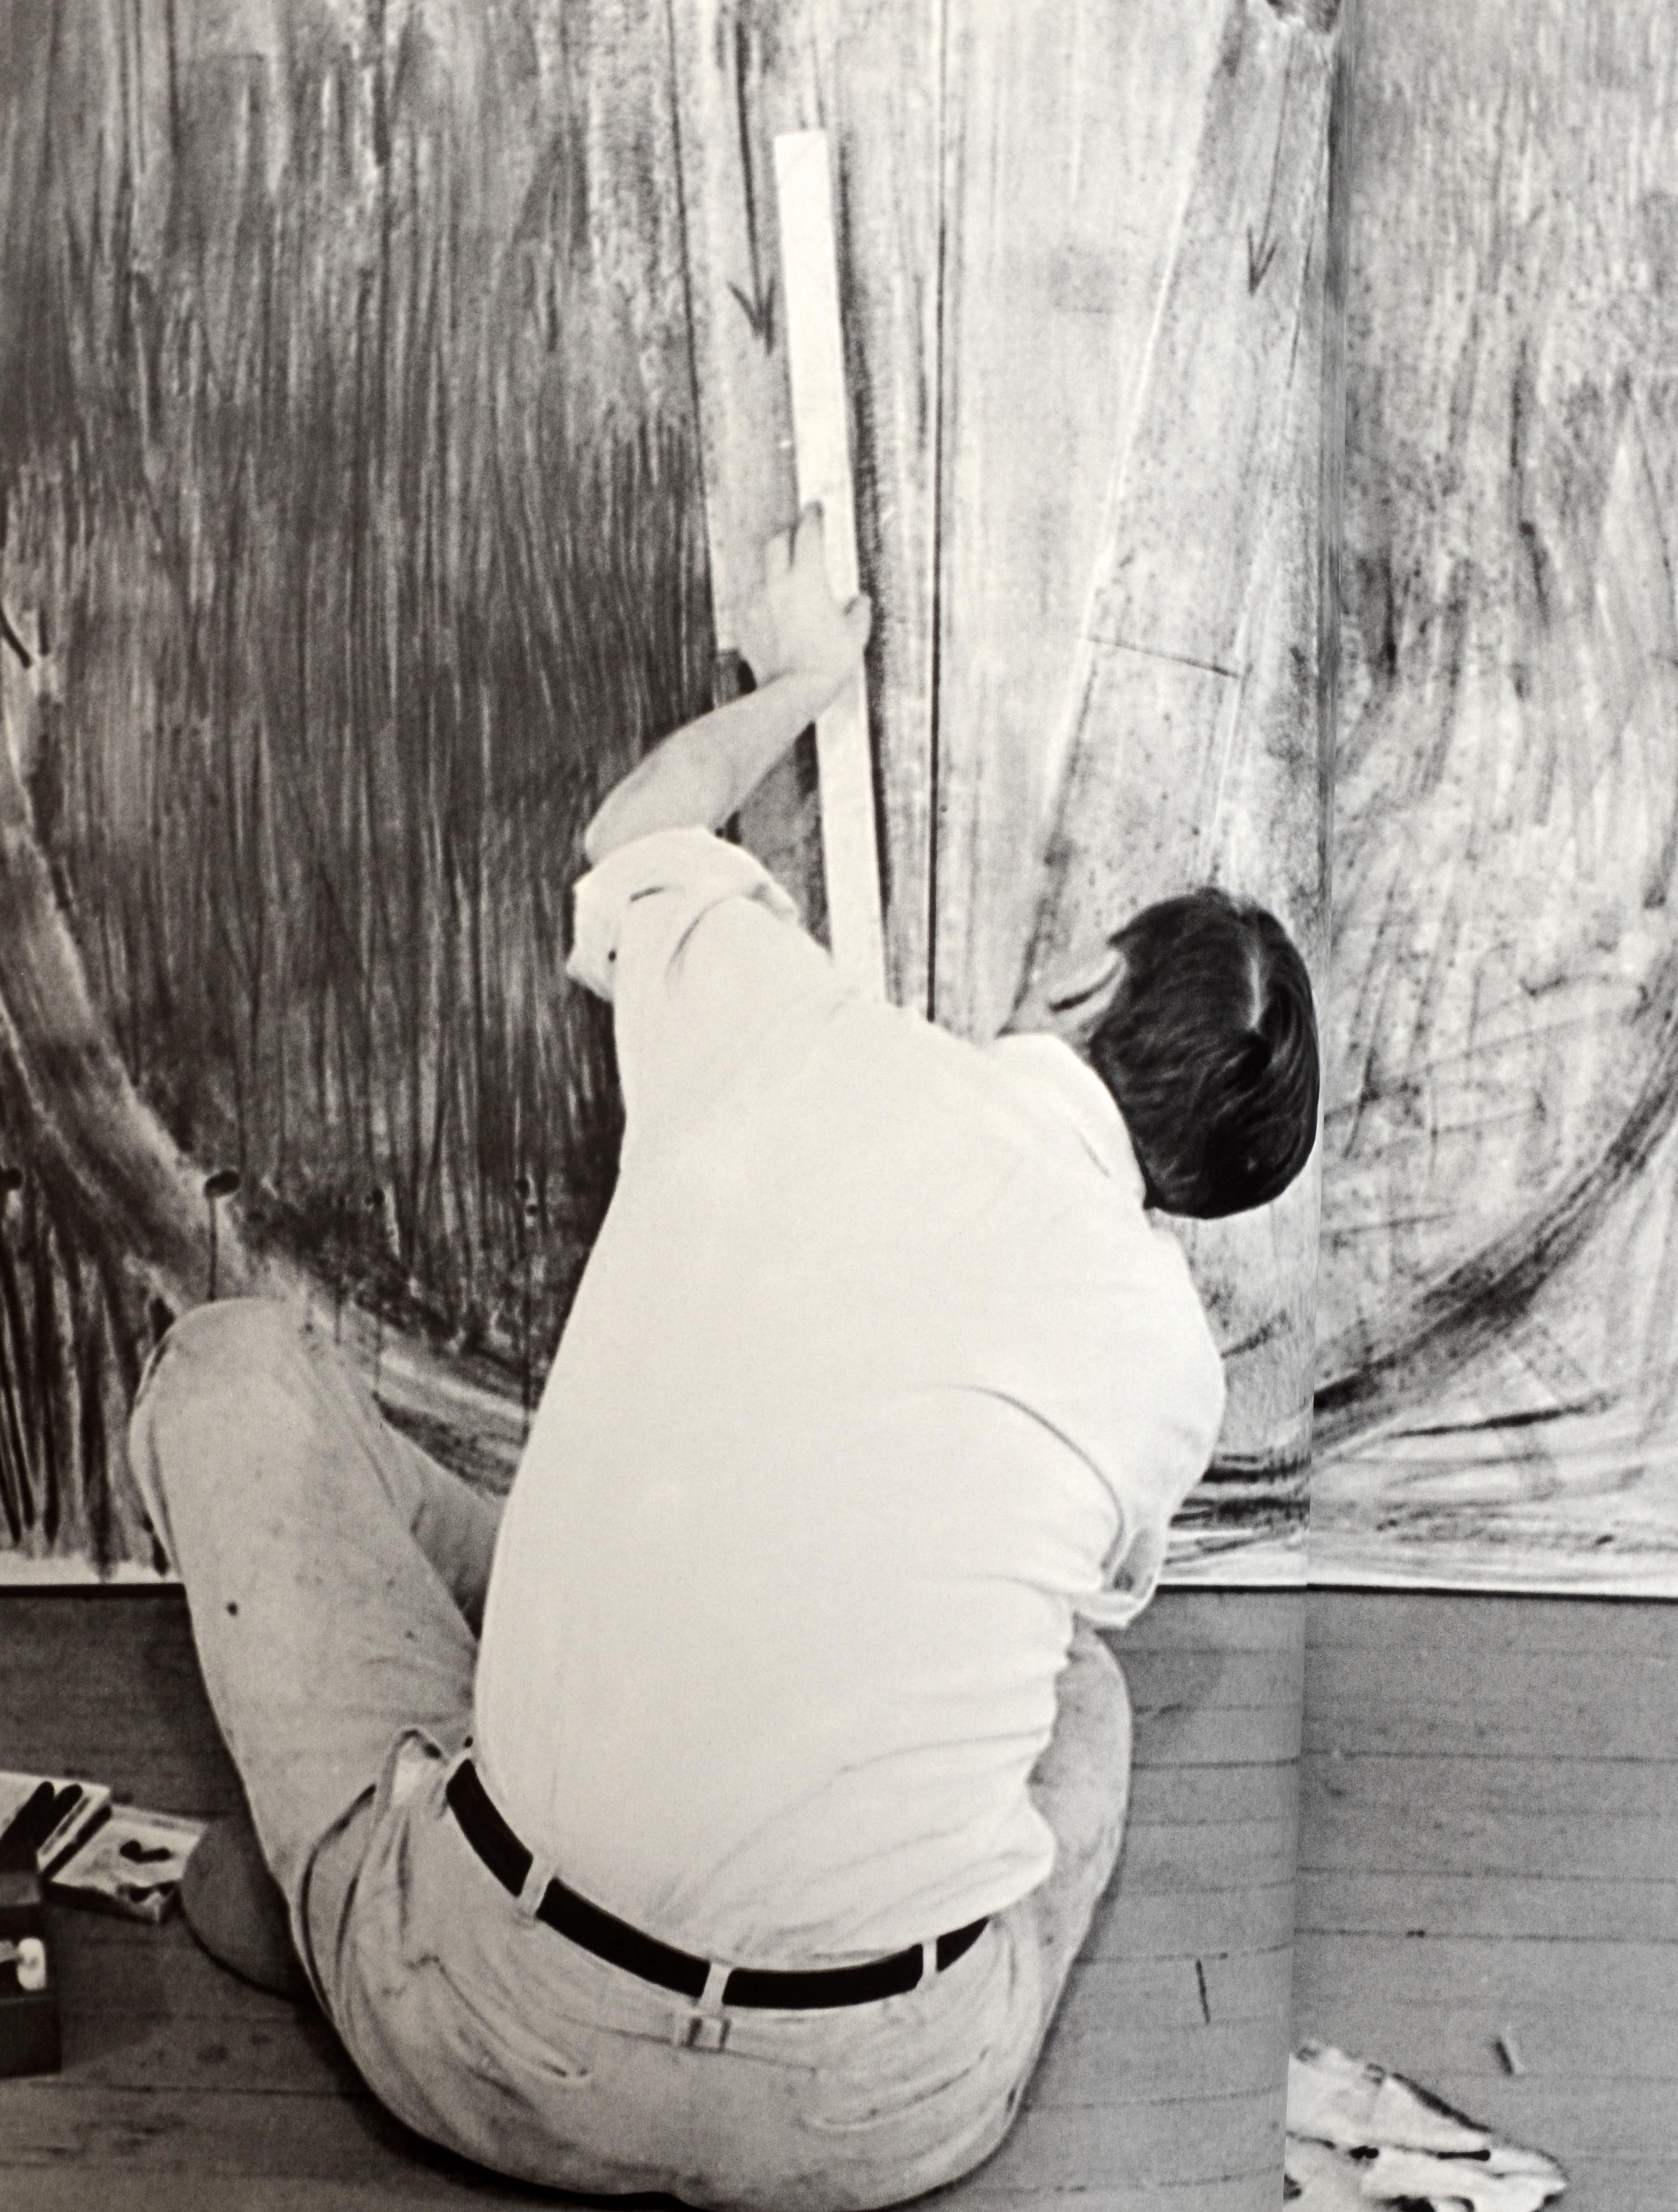 Jasper Johns : An Allegory of Painting, 1955-1965 de Jasper Johns et Jeffrey Weiss. Publié par la National Gallery of Art, Washington D.C. et Yale University Press, 2007. 1ère édition du catalogue d'exposition, couverture souple. Ce catalogue a été